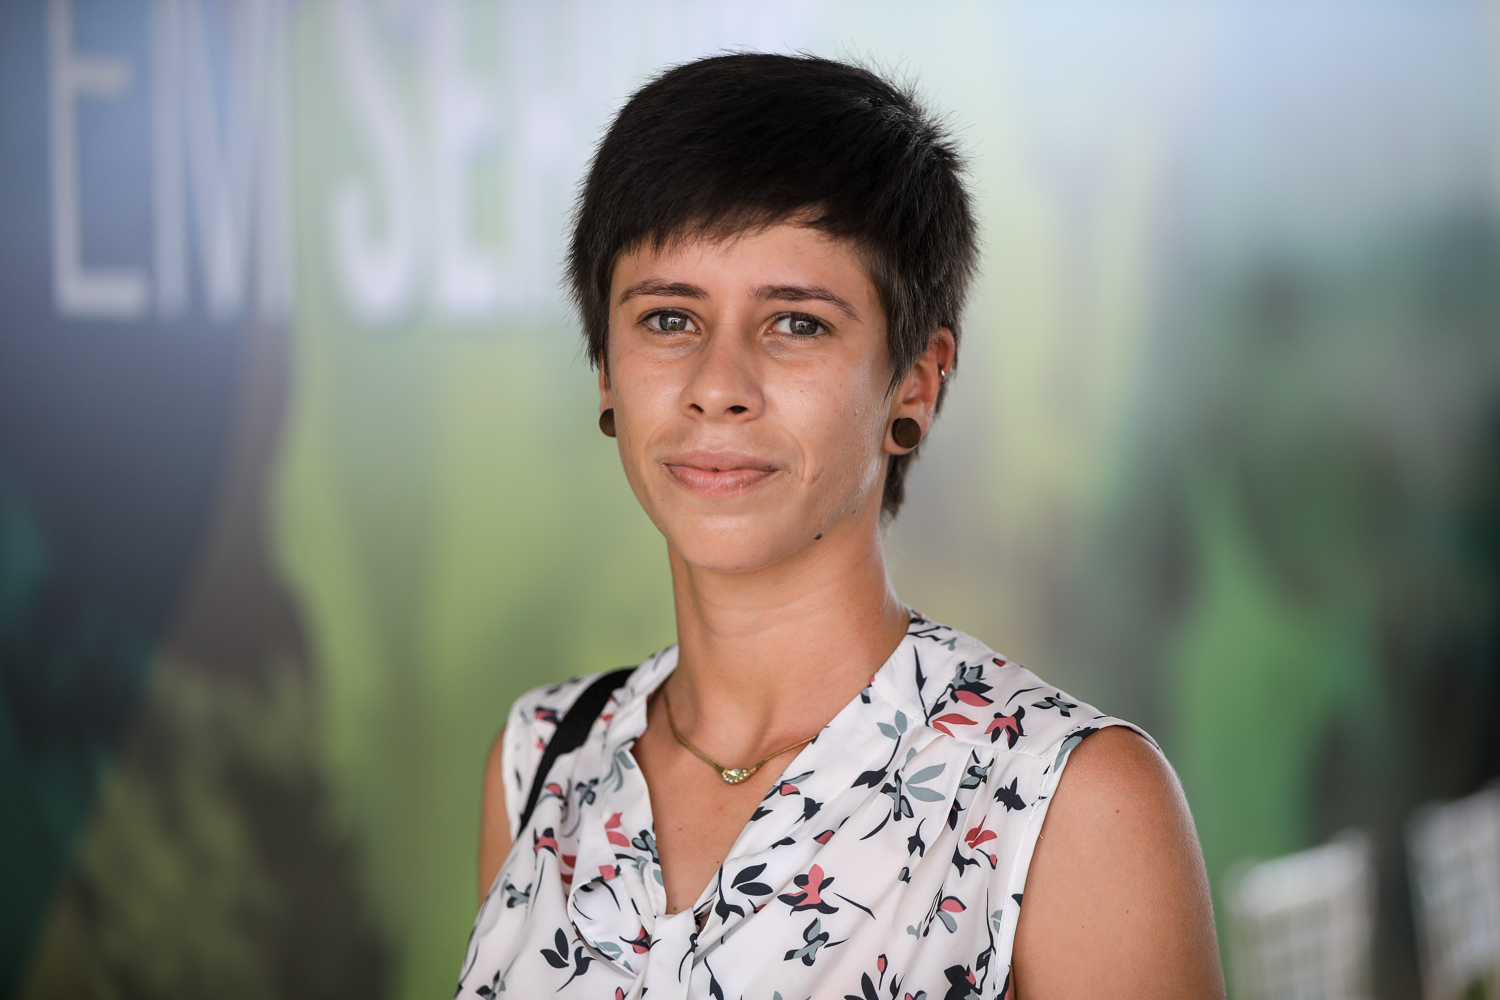 Mariana Pereira de Santana formou-se em Engenharia agronômica e tem atuado em uma empresa de produtos agropecuários acompanhando a produção de diversos tipos de cultura